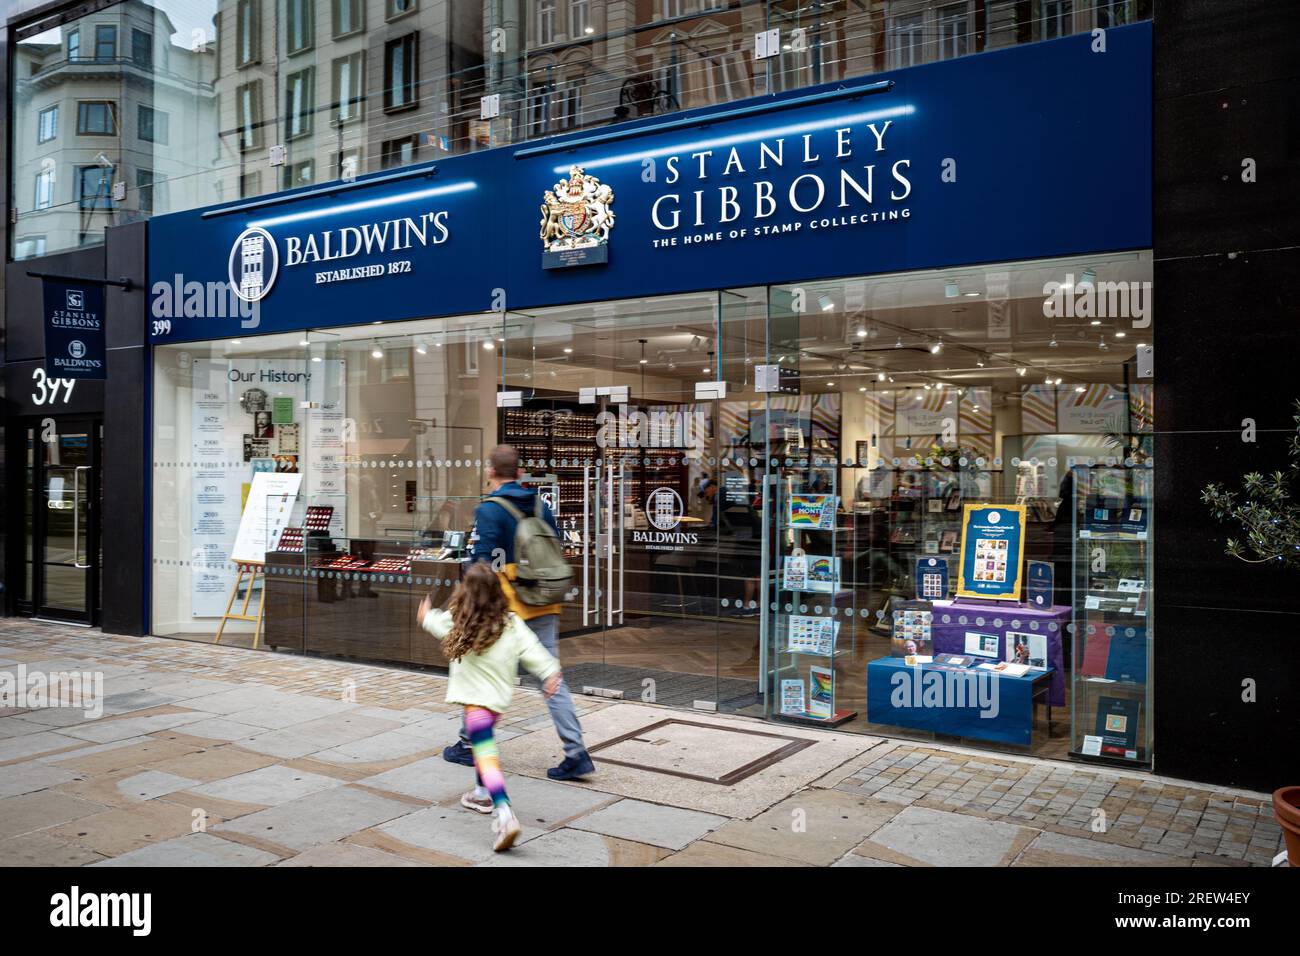 Stanley Gibbons e Baldwins showroom e HQ al 399 The Strand London. Stanley Gibbons è il più lungo commerciante di francobolli al mondo. Foto Stock